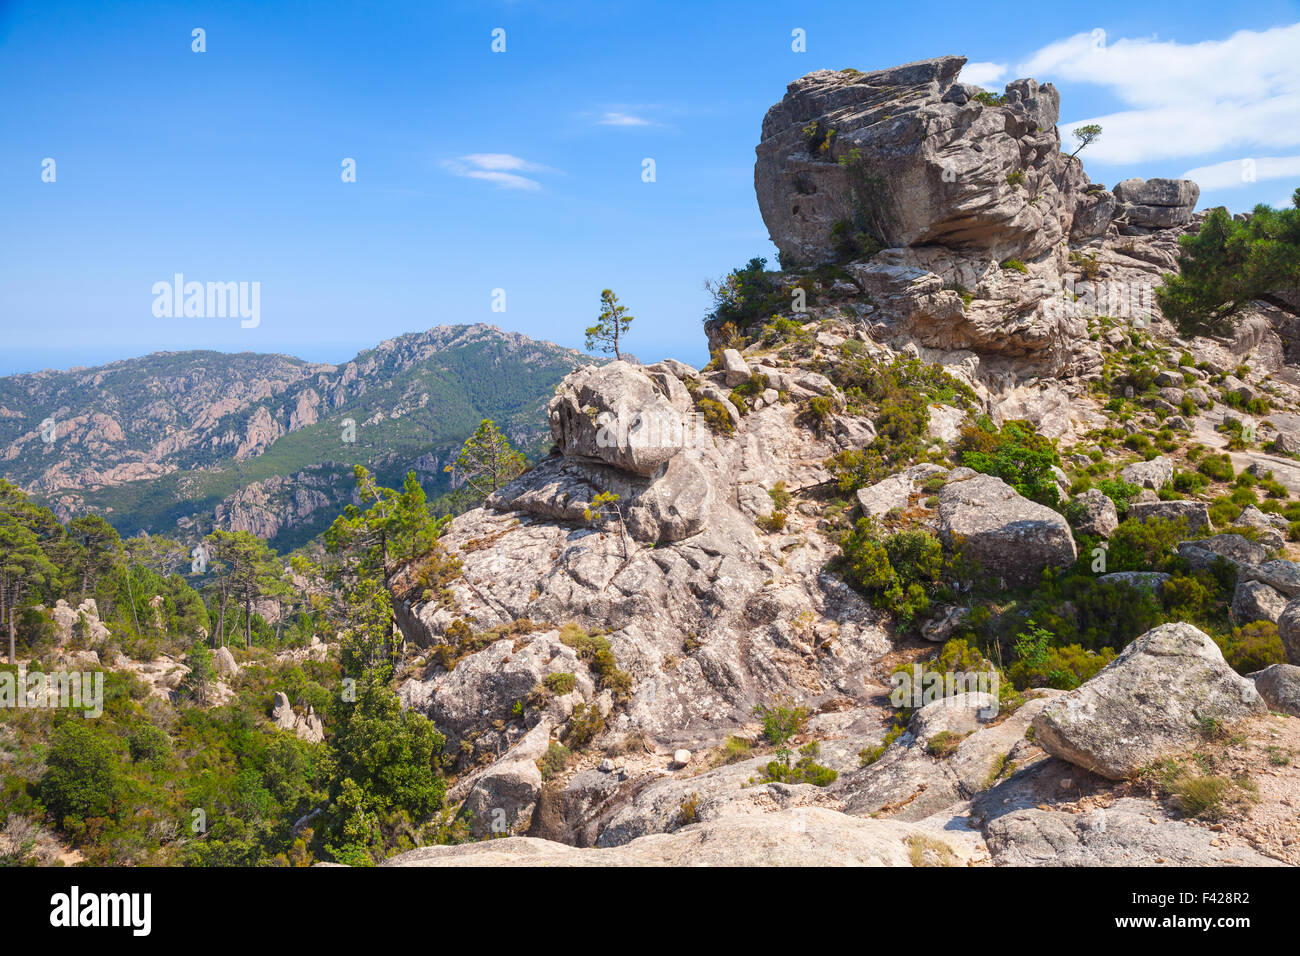 Wilde Berglandschaft mit kleinen Kiefern wachsen auf den Felsen. Südlichen Teil der Insel Korsika, Frankreich Stockfoto